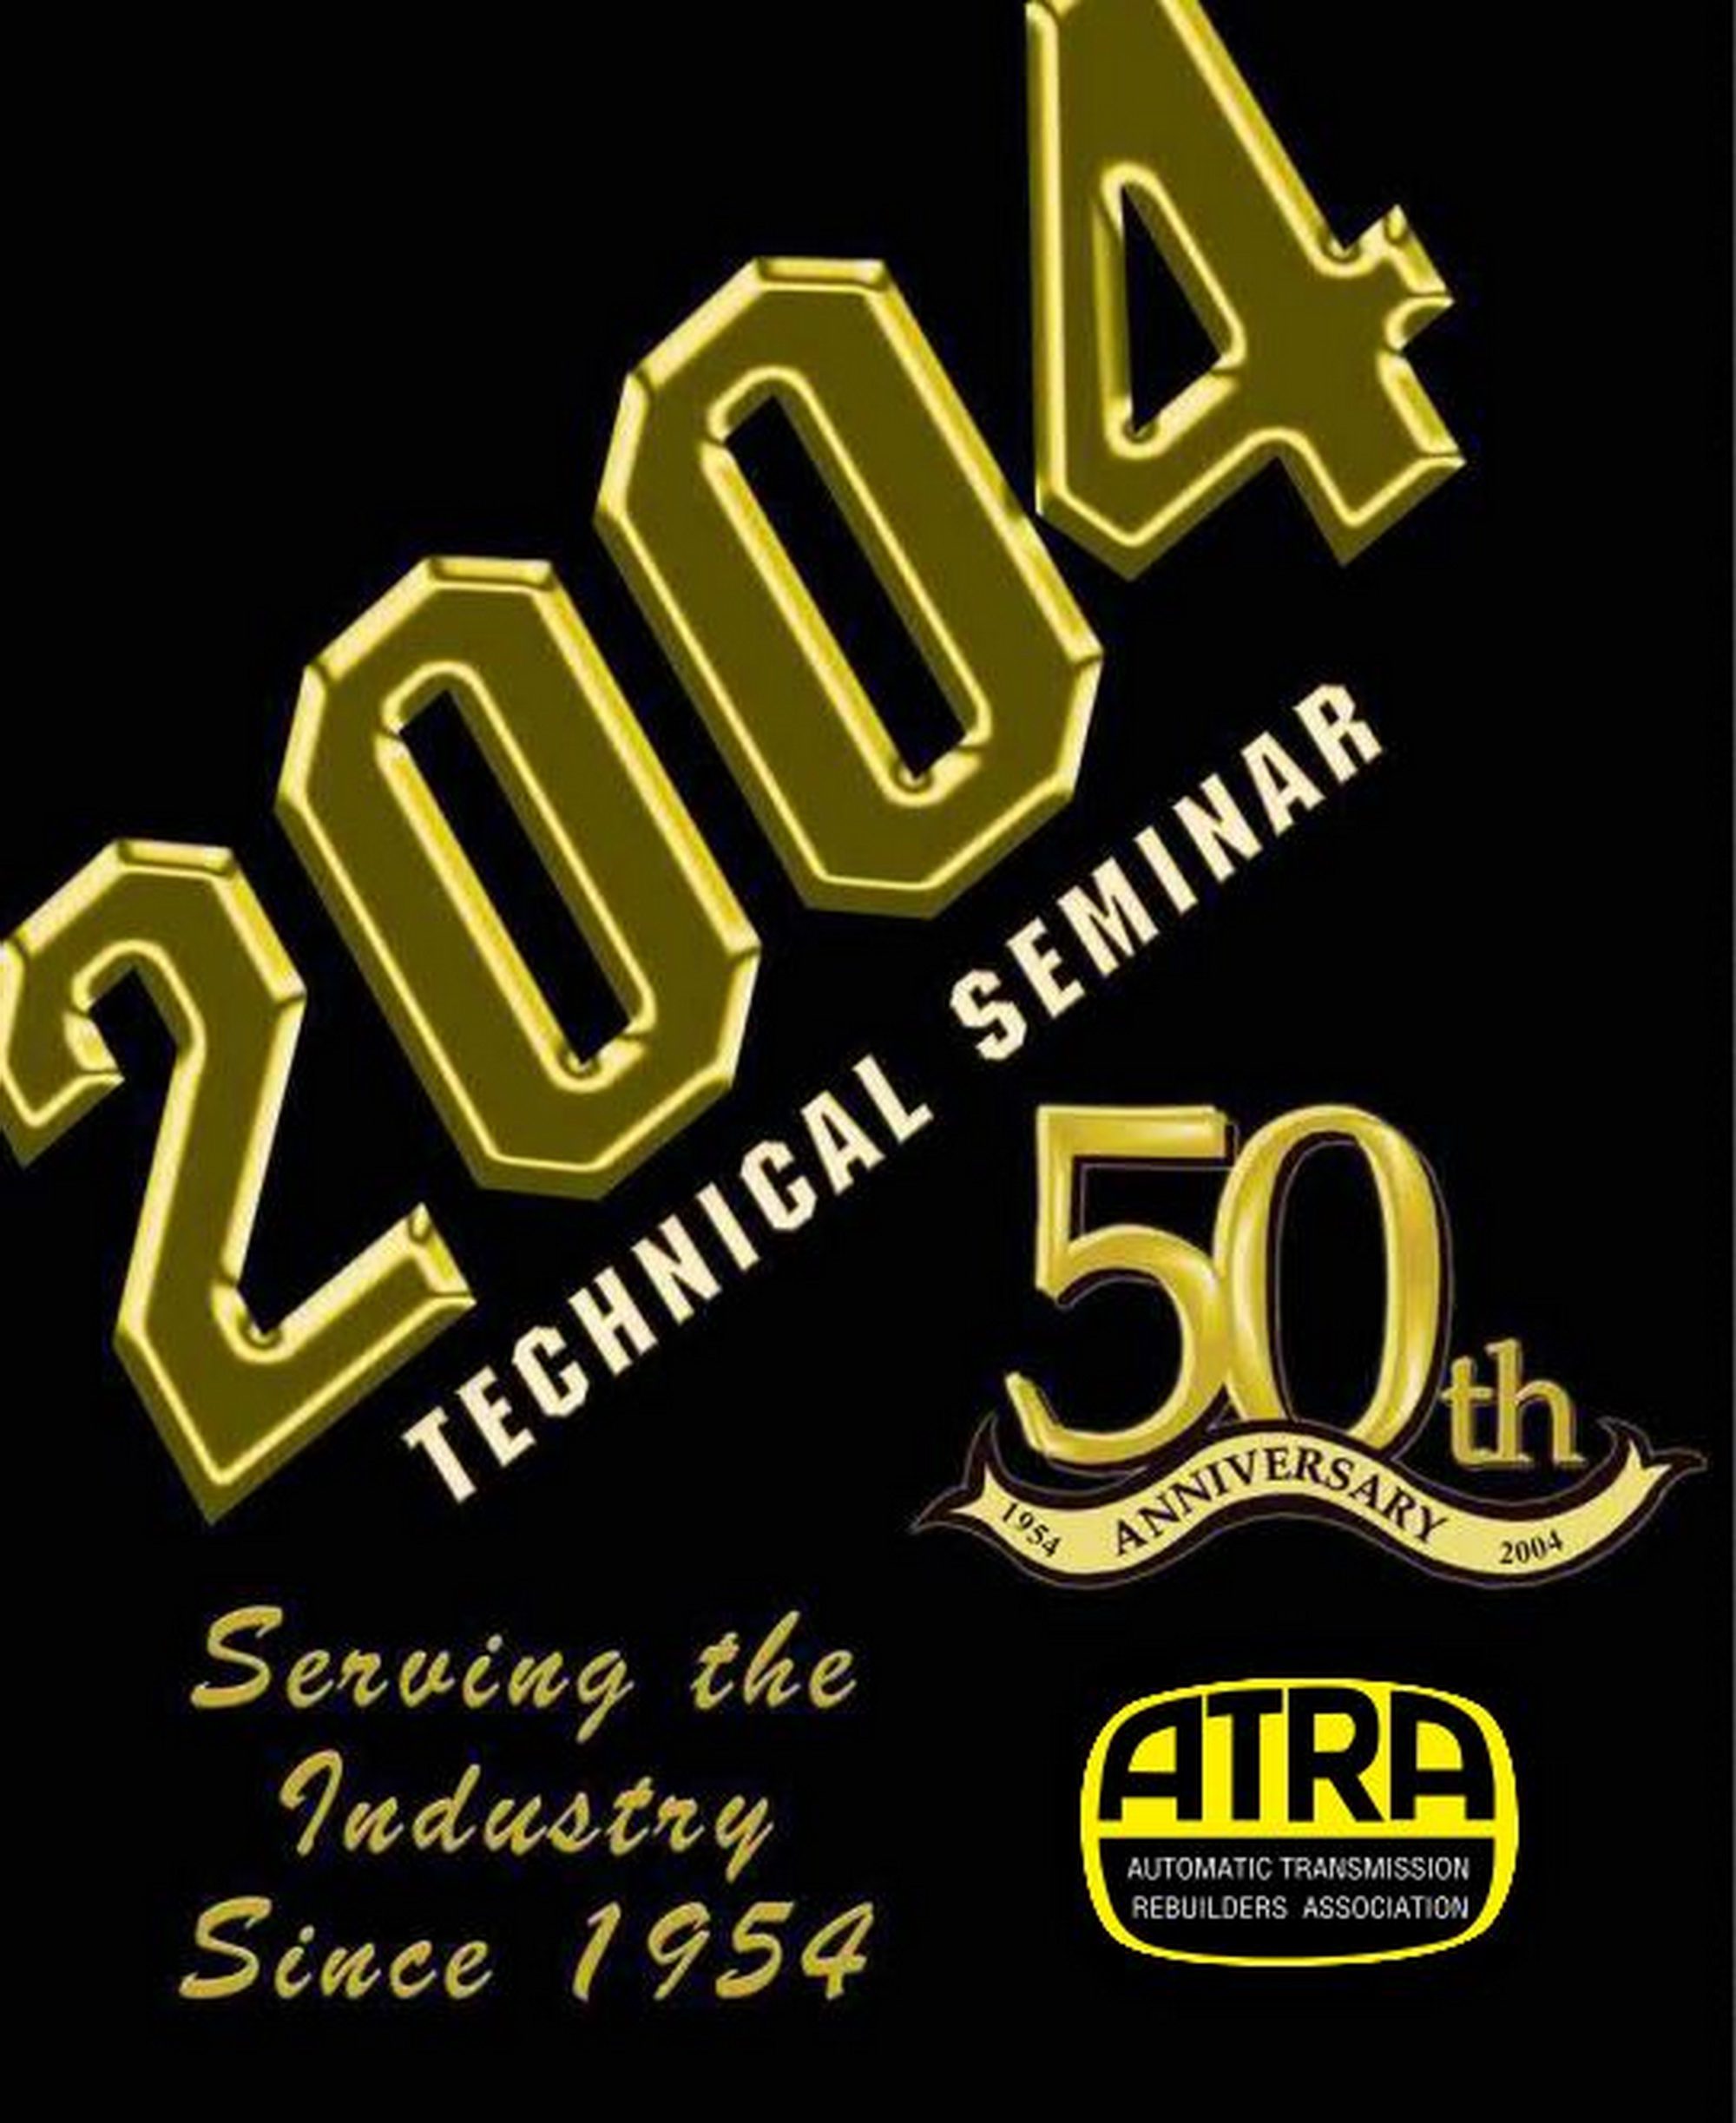 2004 ATRA Seminar Manual Contents - Pdf Online Download